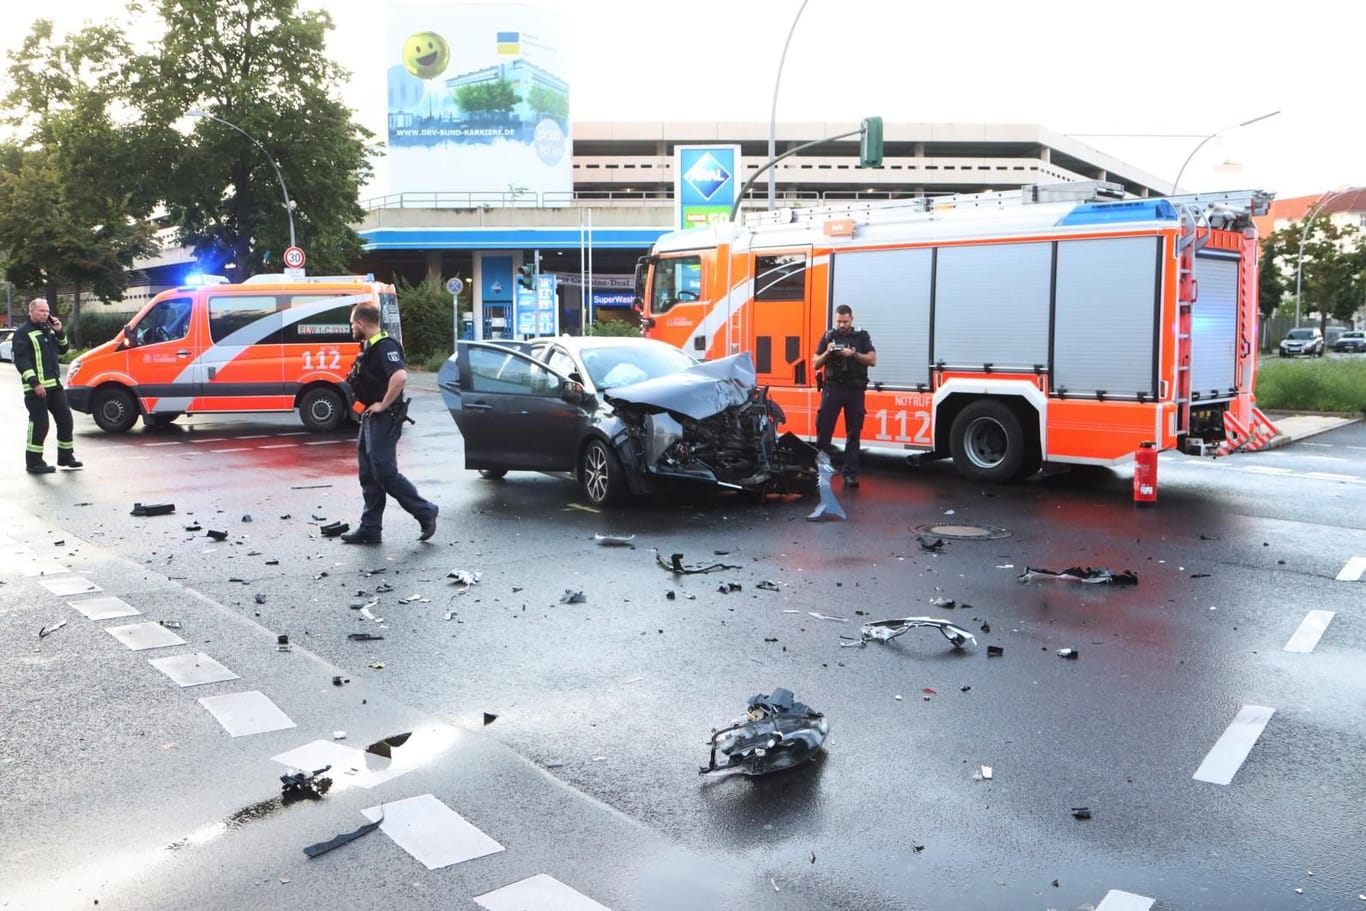 Ein feuerwehrfahrzeug ist in Berlin mit einem PKW kollidiert